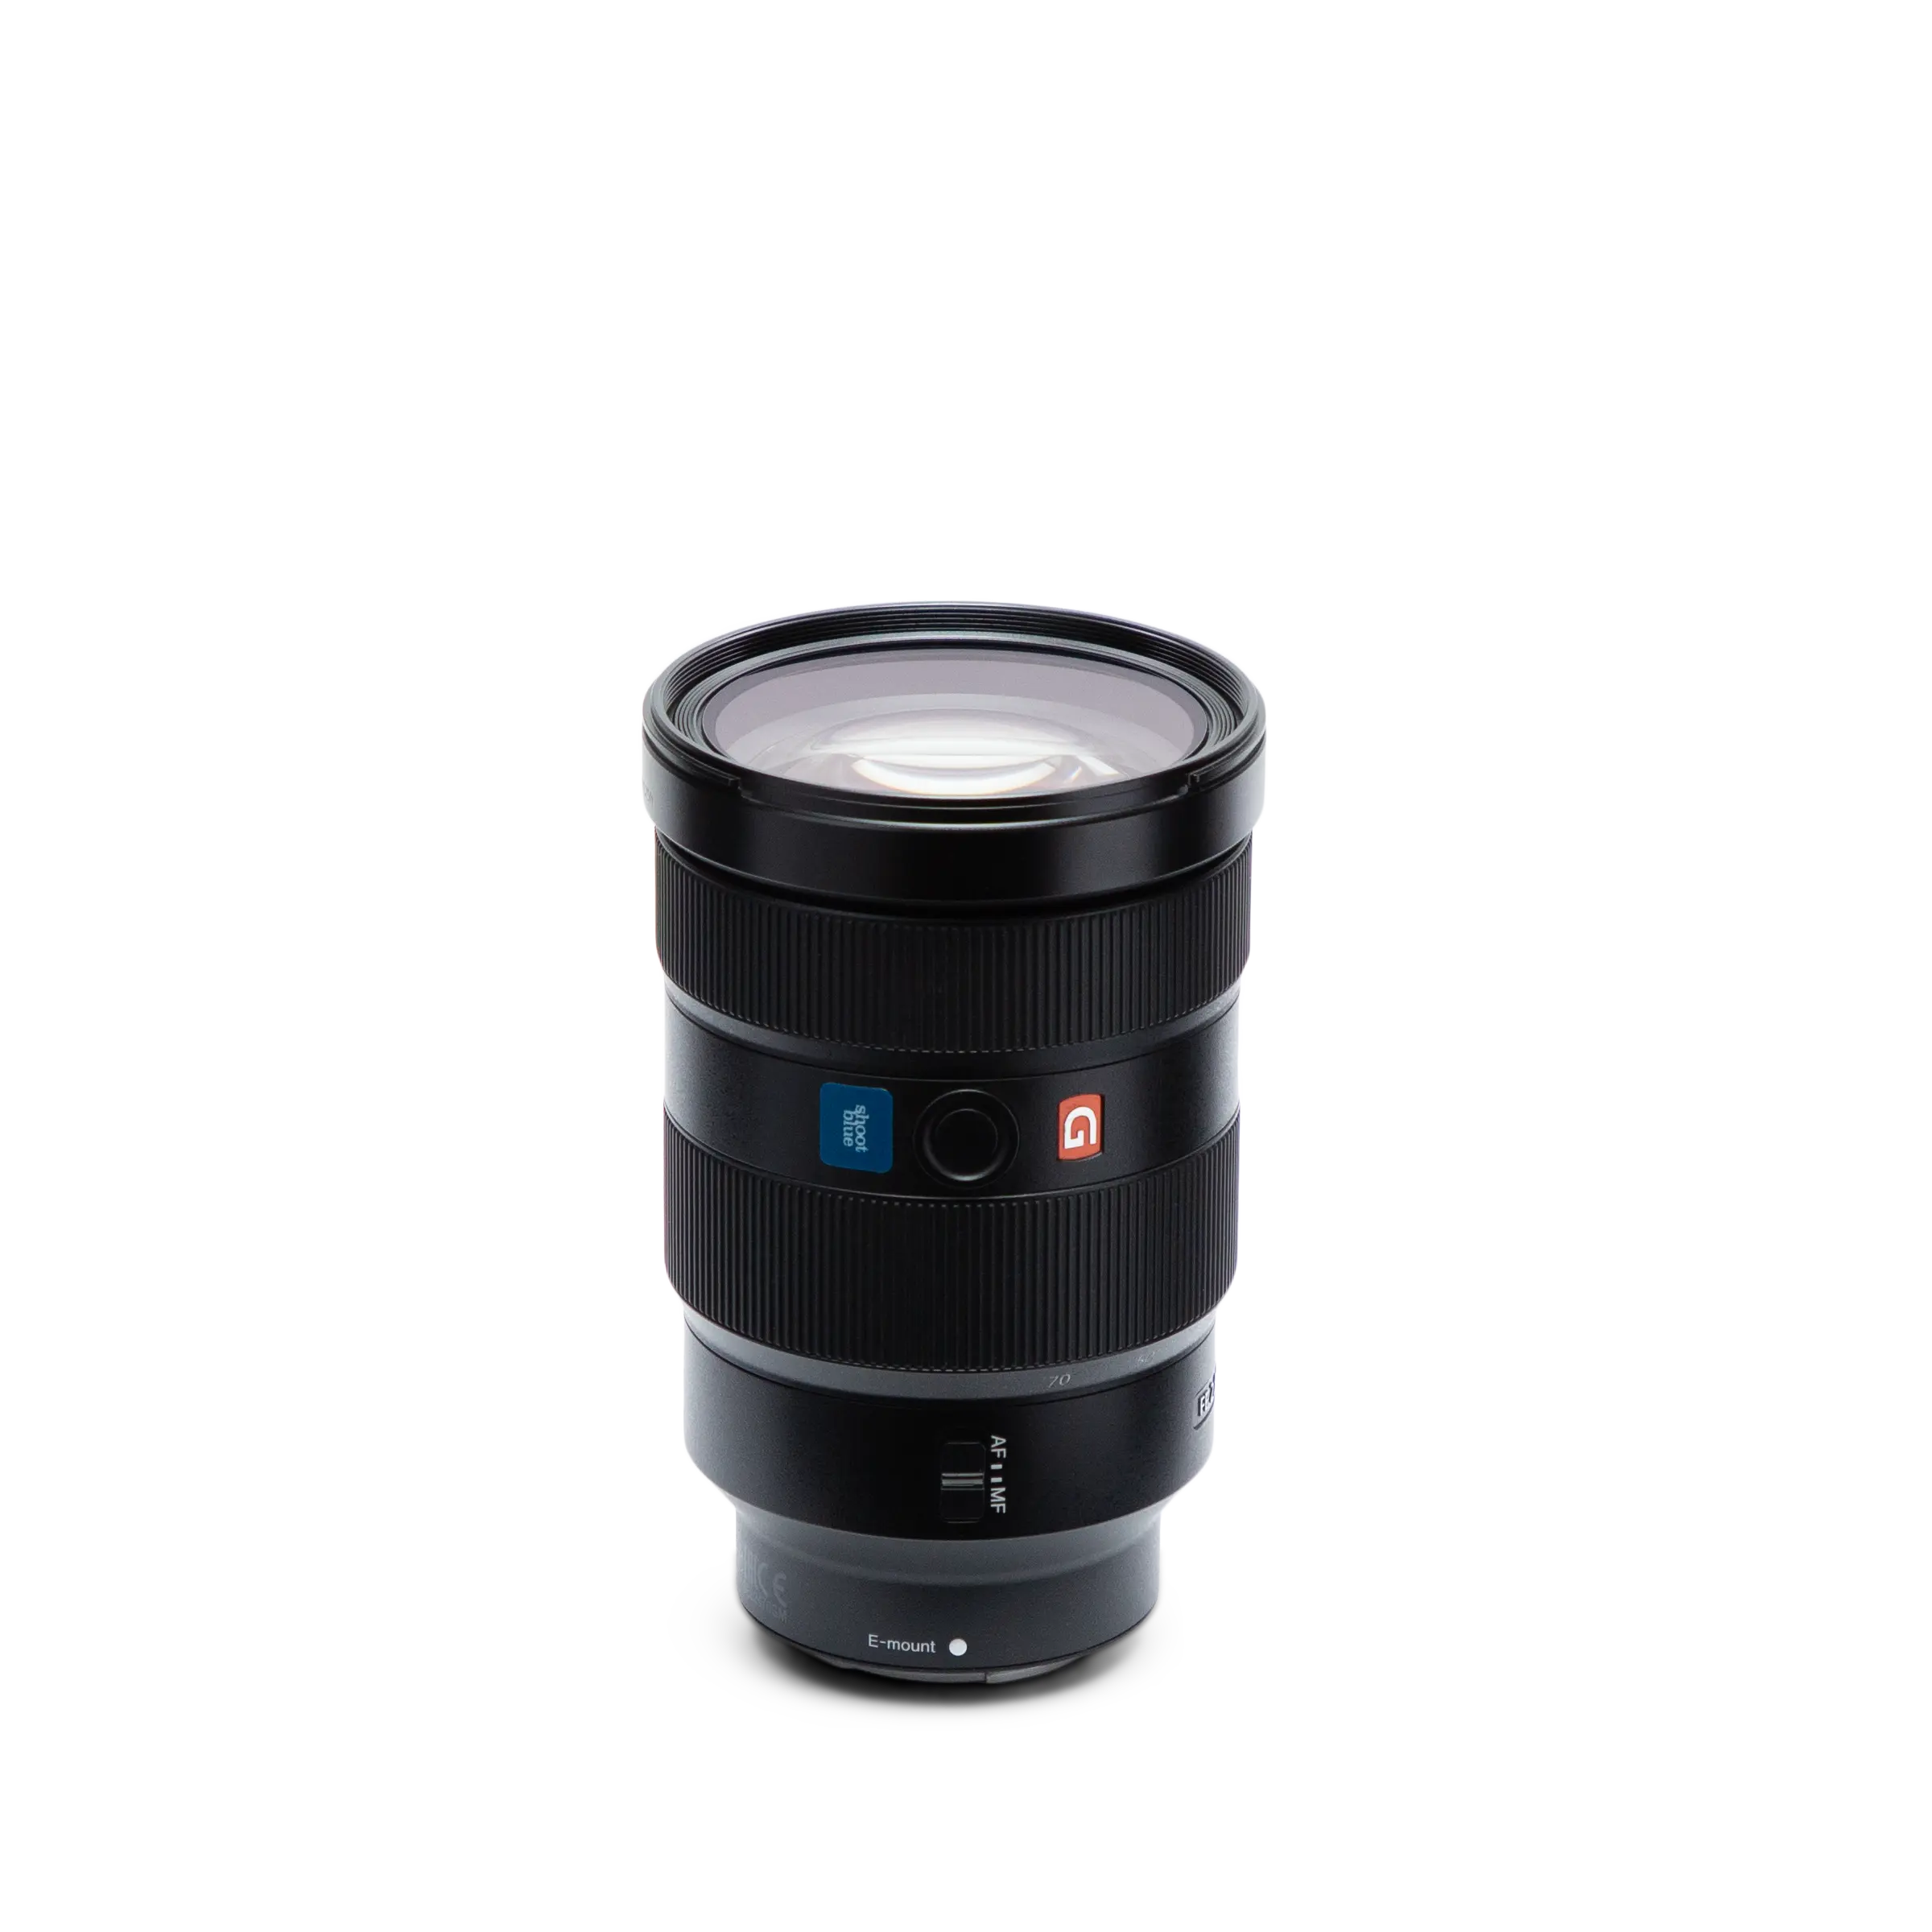 Sony FE 24-70mm F2.8 GM II Full-frame Standard Zoom G Master lens